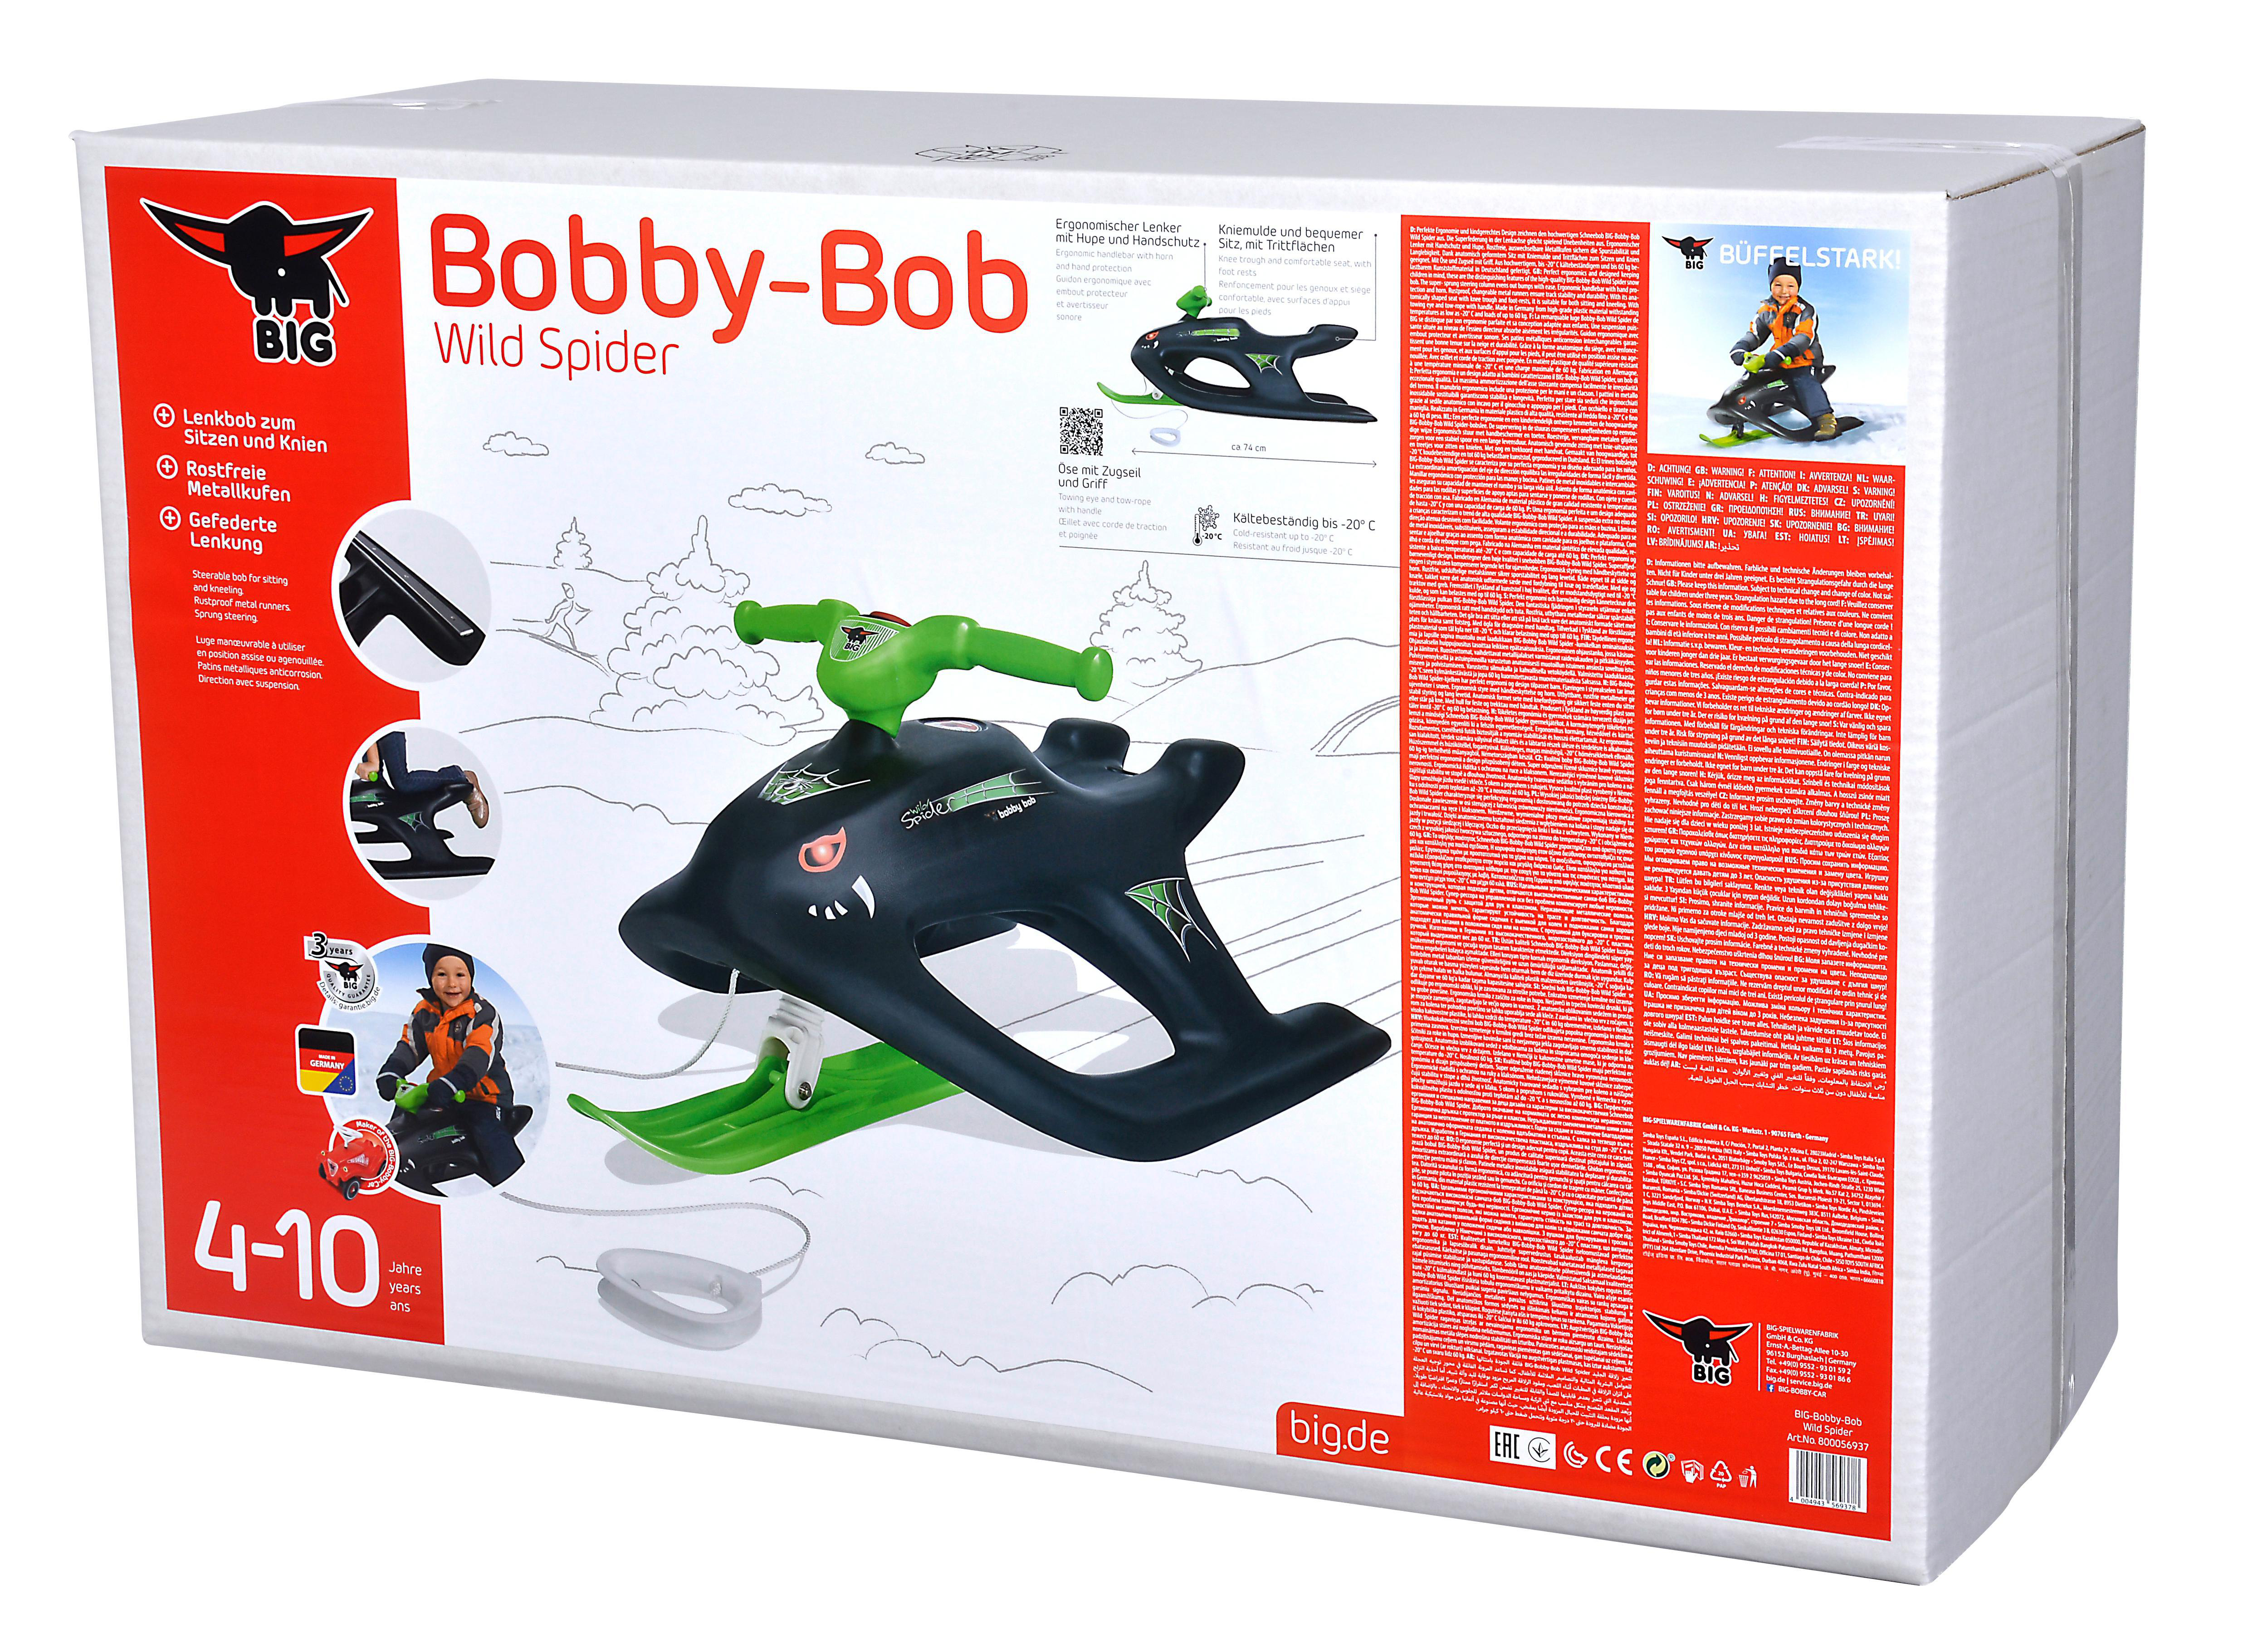 BIG Bobby-Bob Wild Schlitten Spider Schwarz/Grün